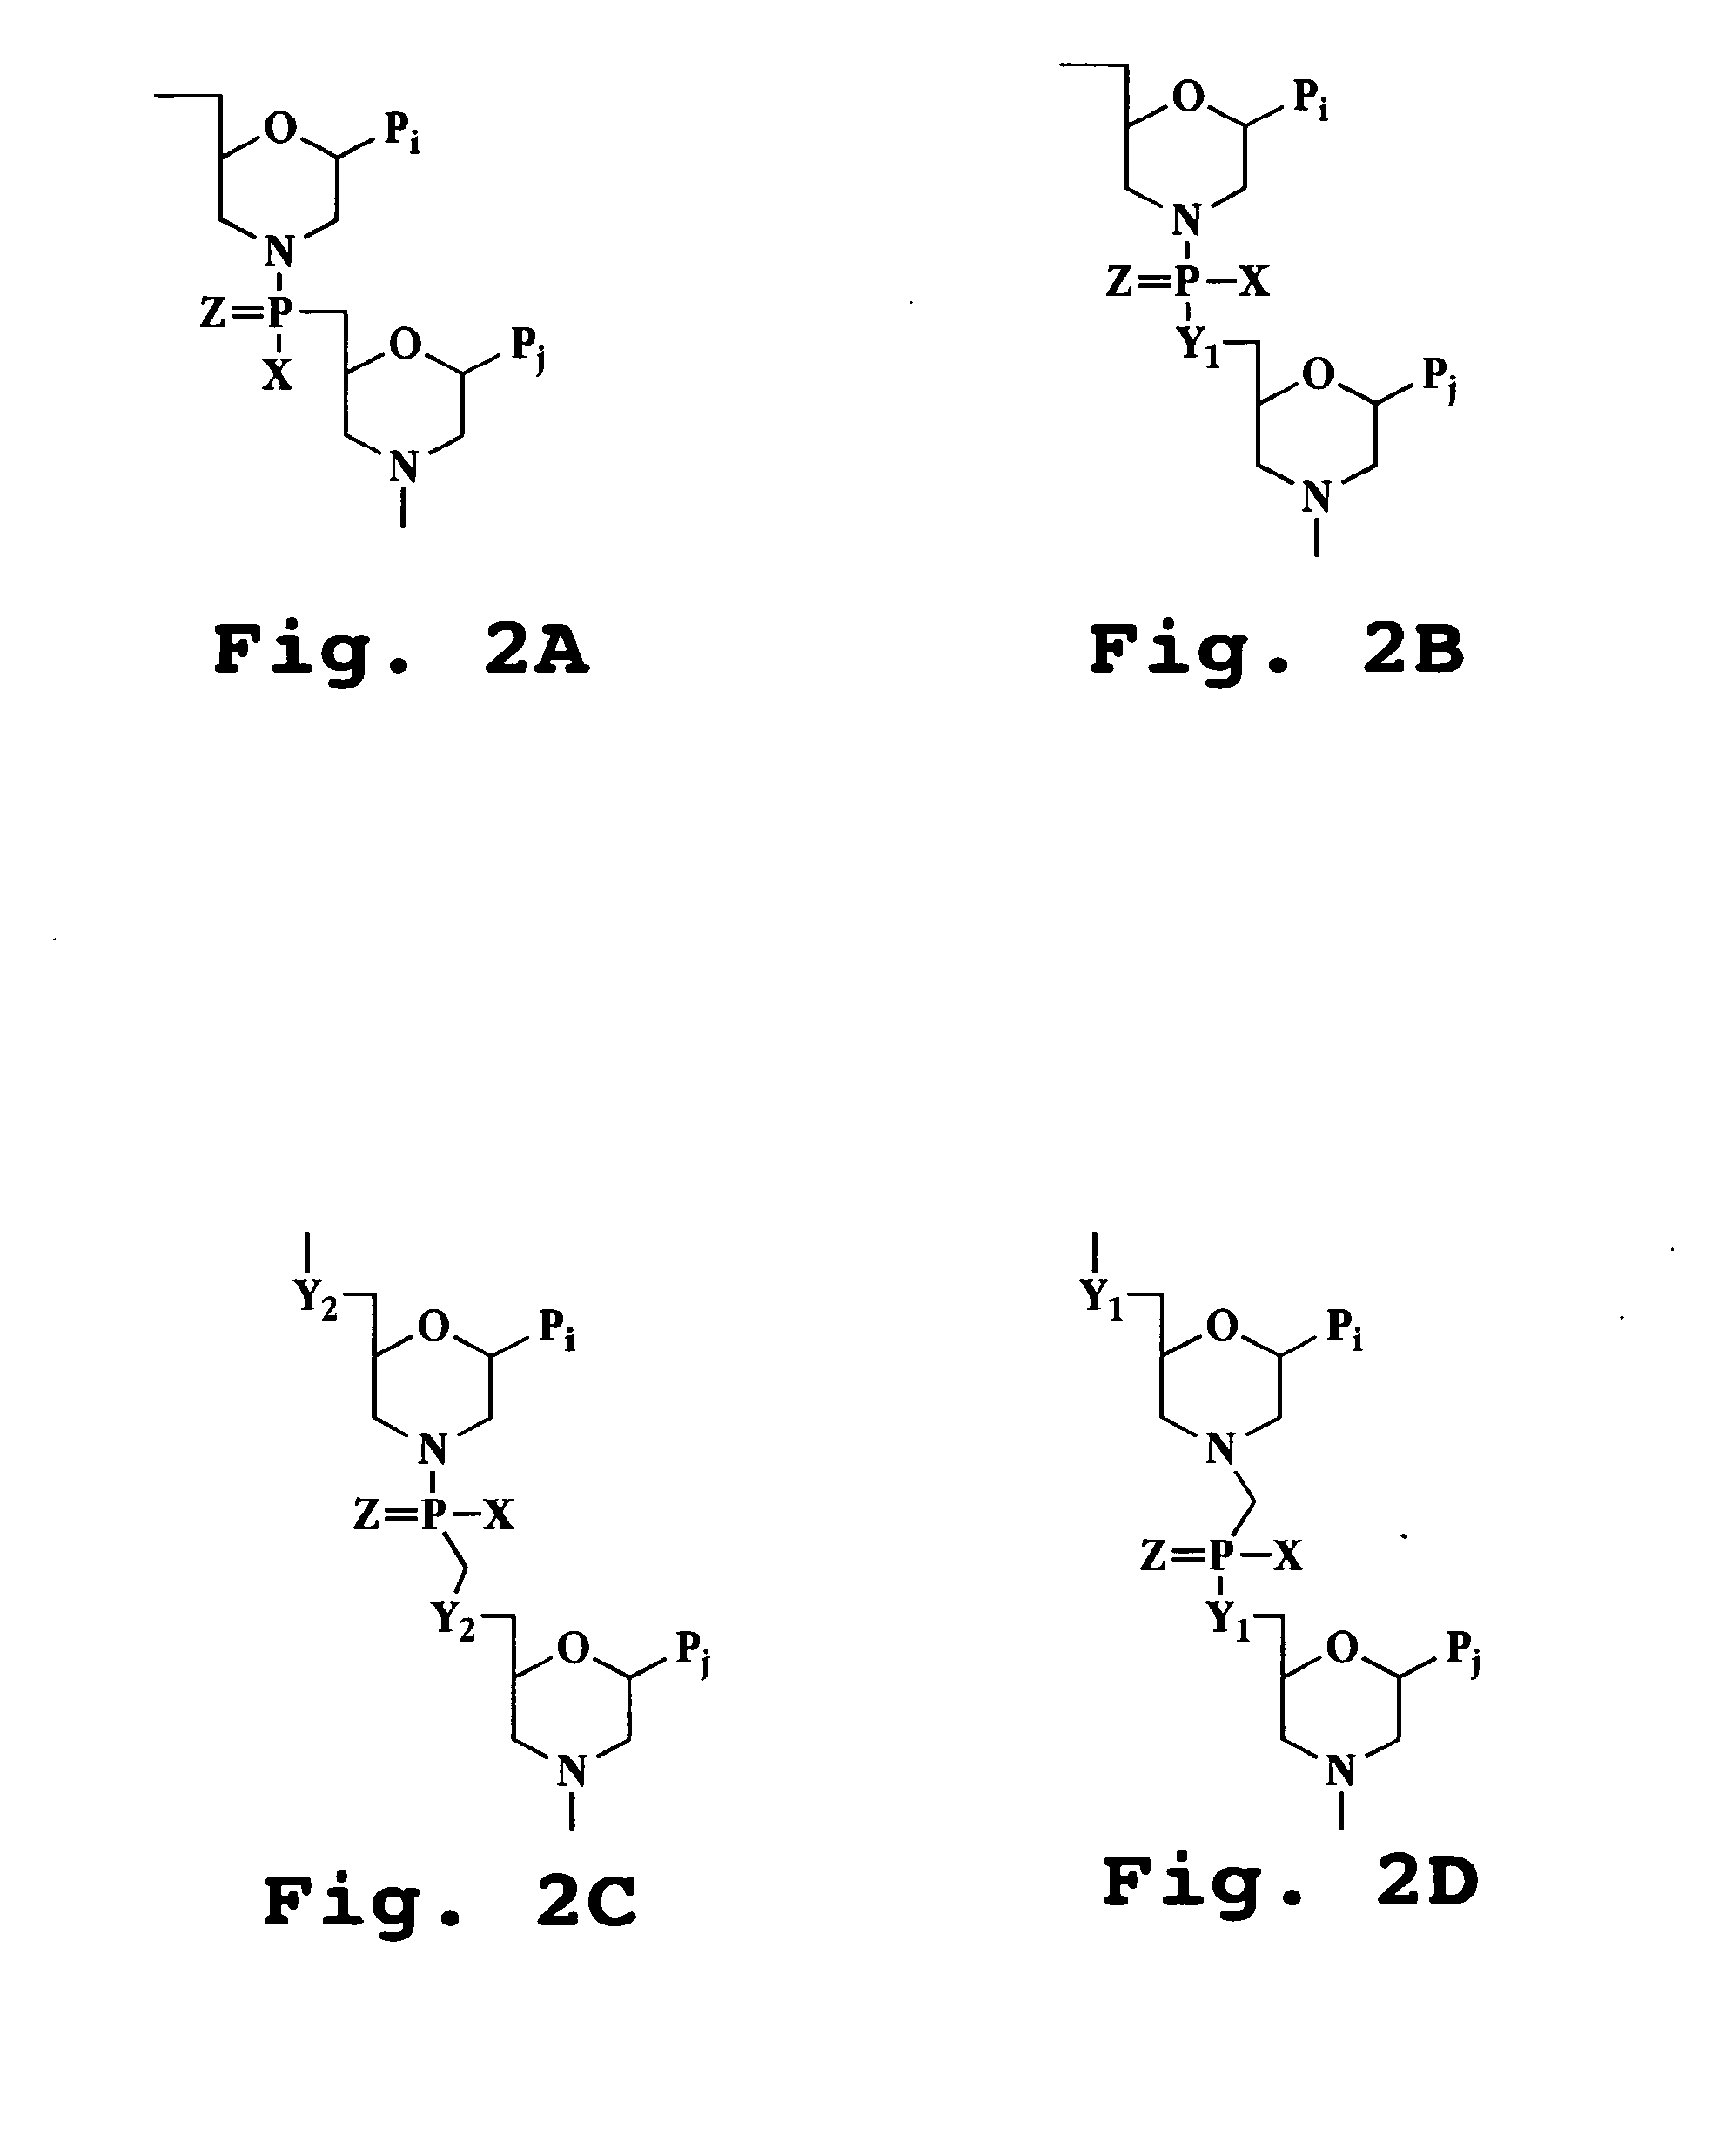 Peptide conjugated, inosine-substituted antisense oligomer compound and method